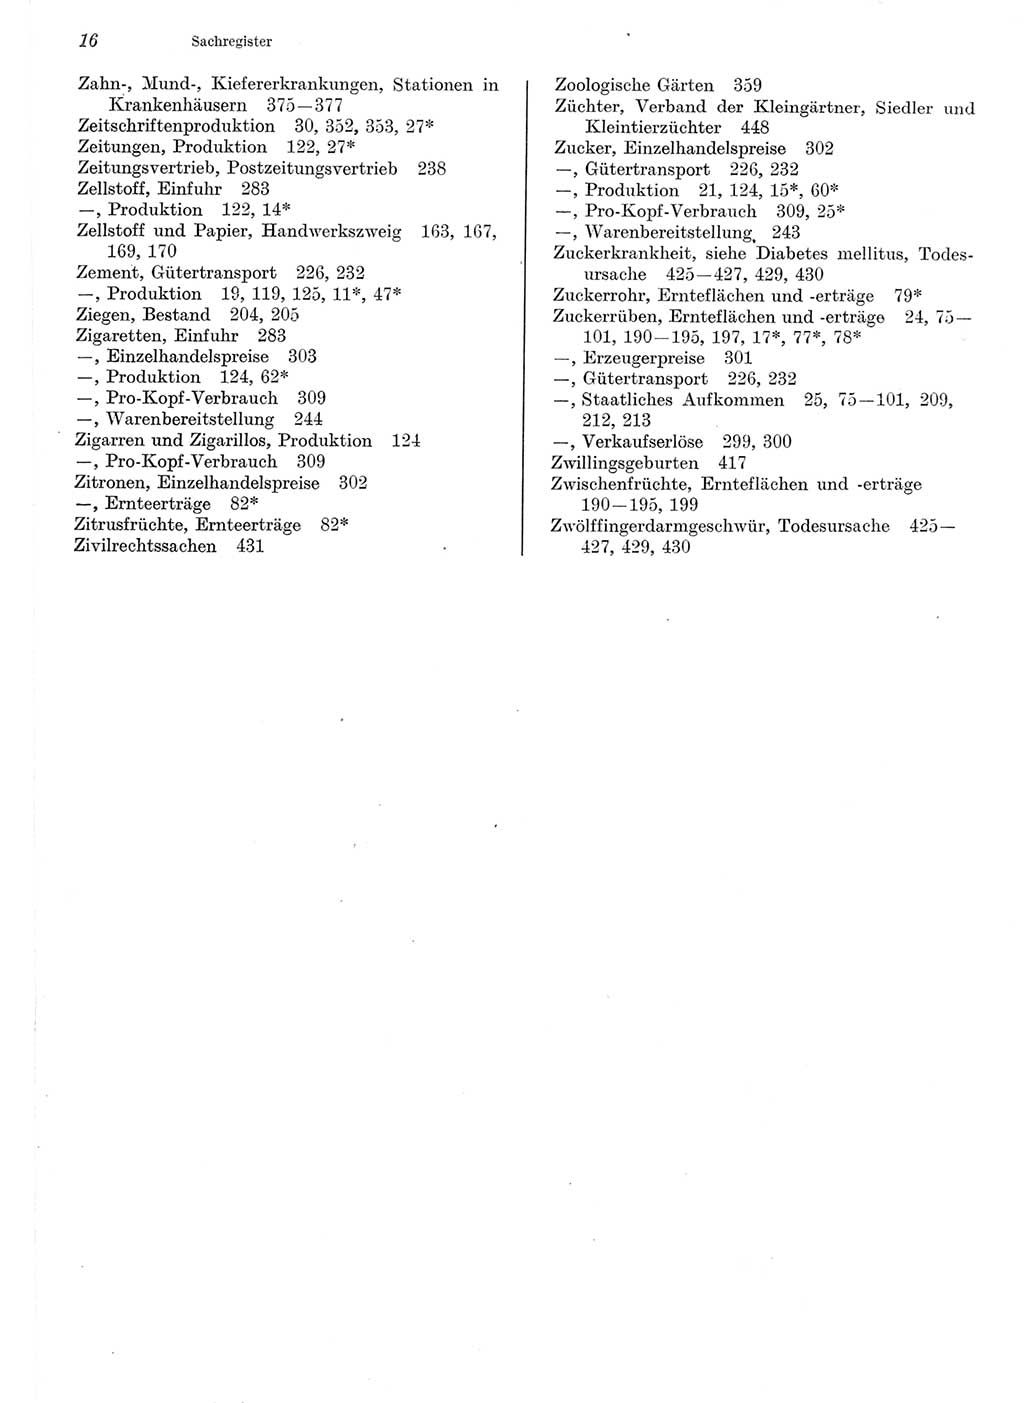 Statistisches Jahrbuch der Deutschen Demokratischen Republik (DDR) 1975, Seite 16 (Stat. Jb. DDR 1975, S. 16)